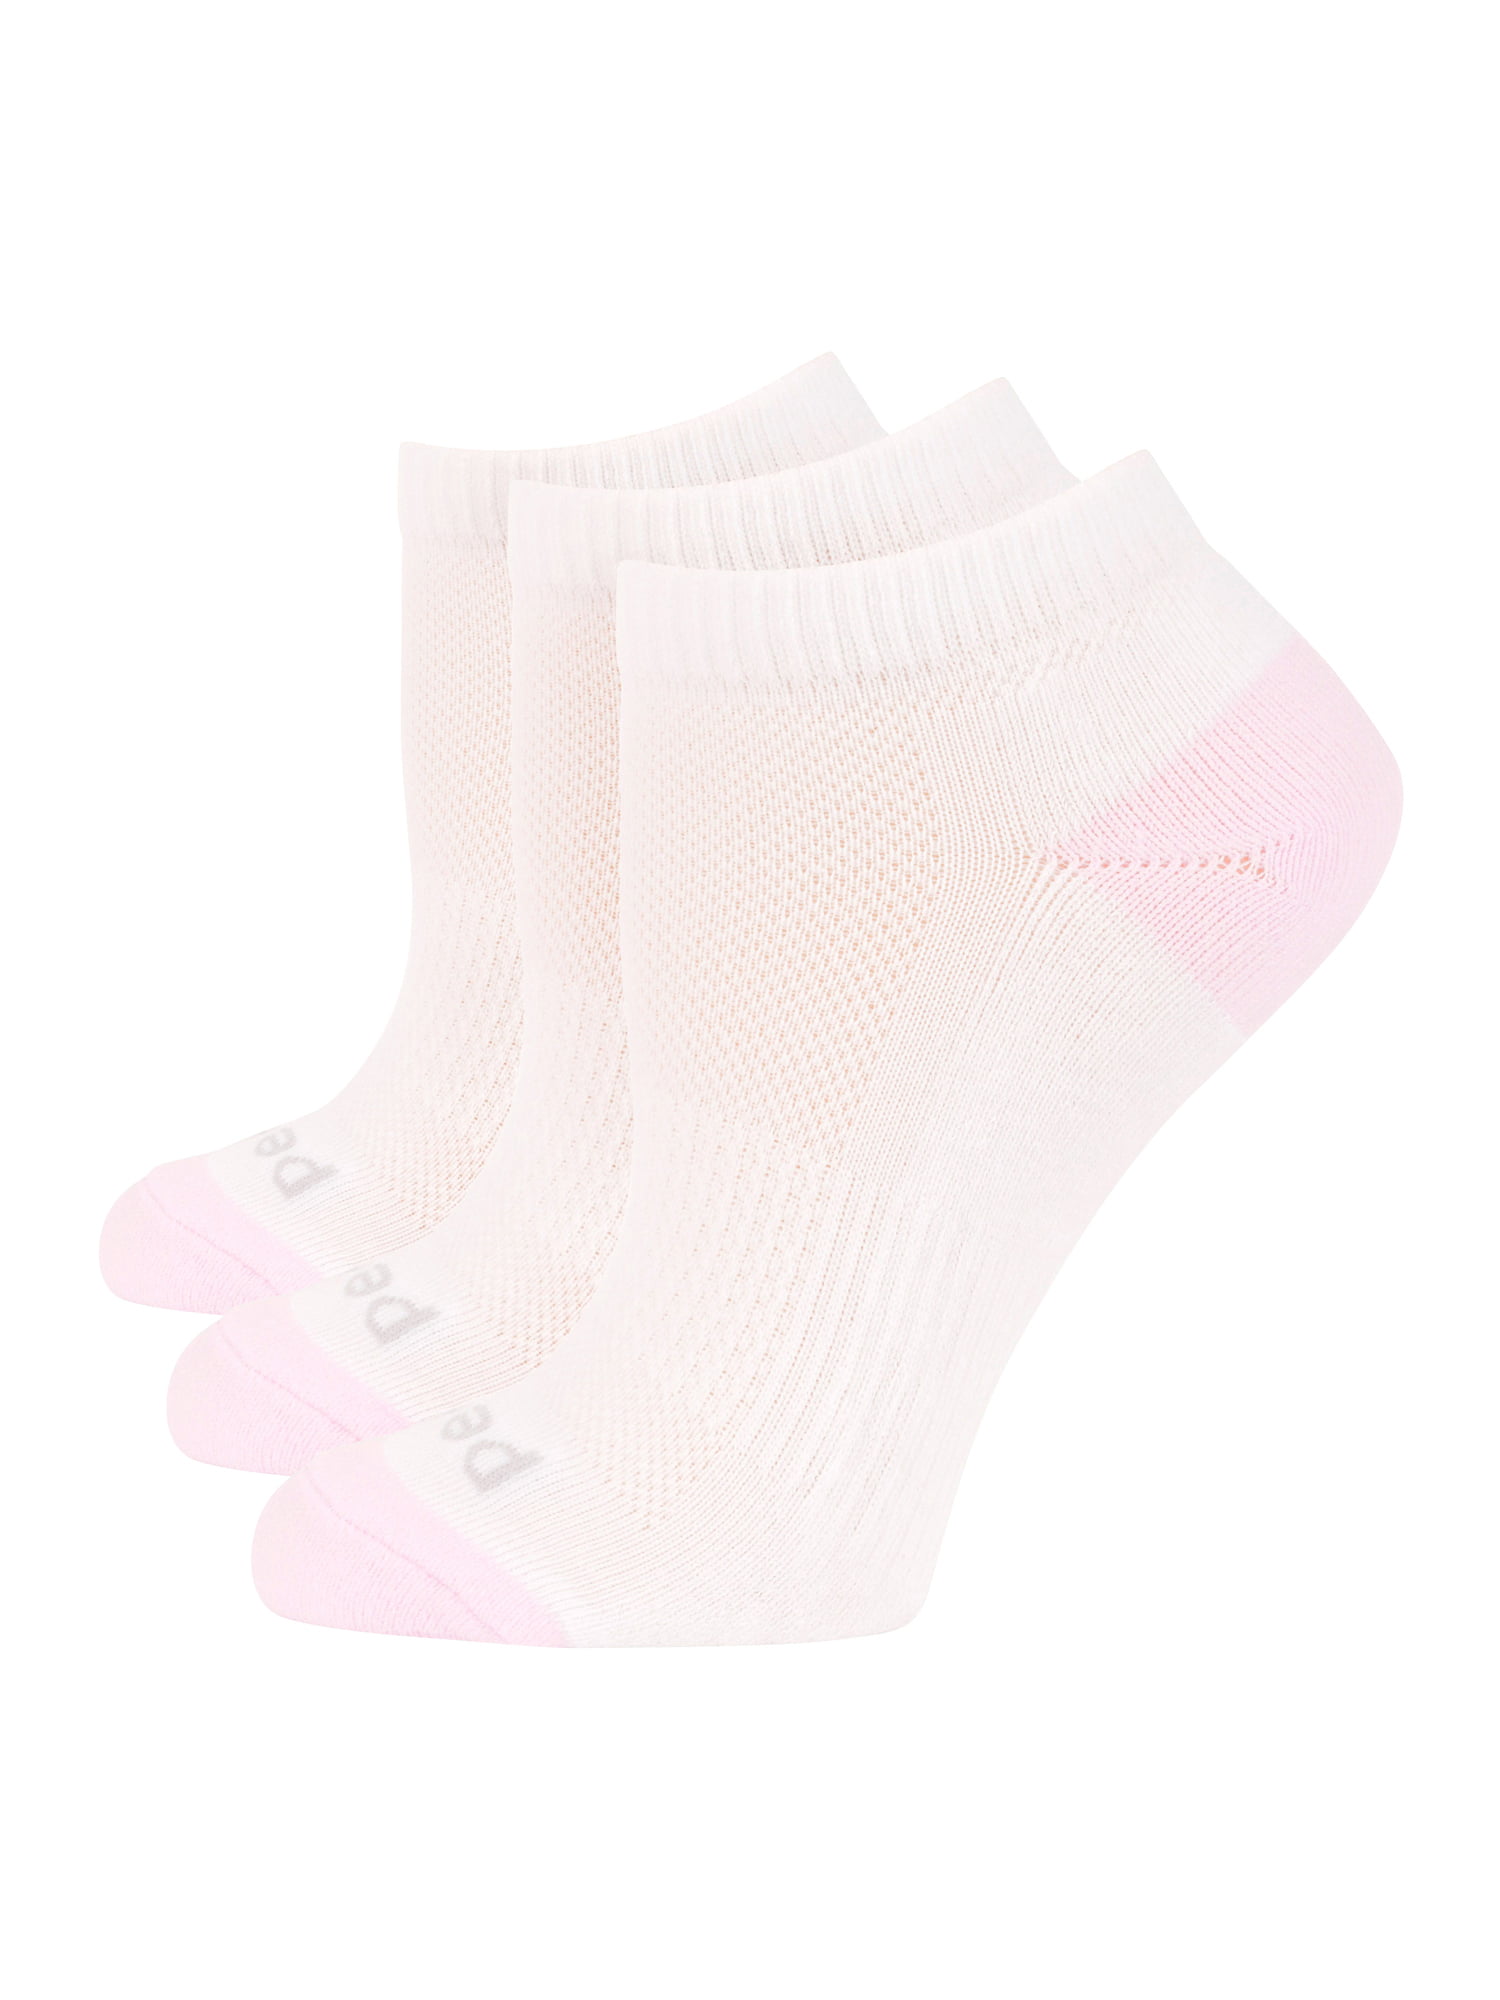 Ladies Low Cut Sport Socks with Nanoglide, 3 Pairs - Walmart.com